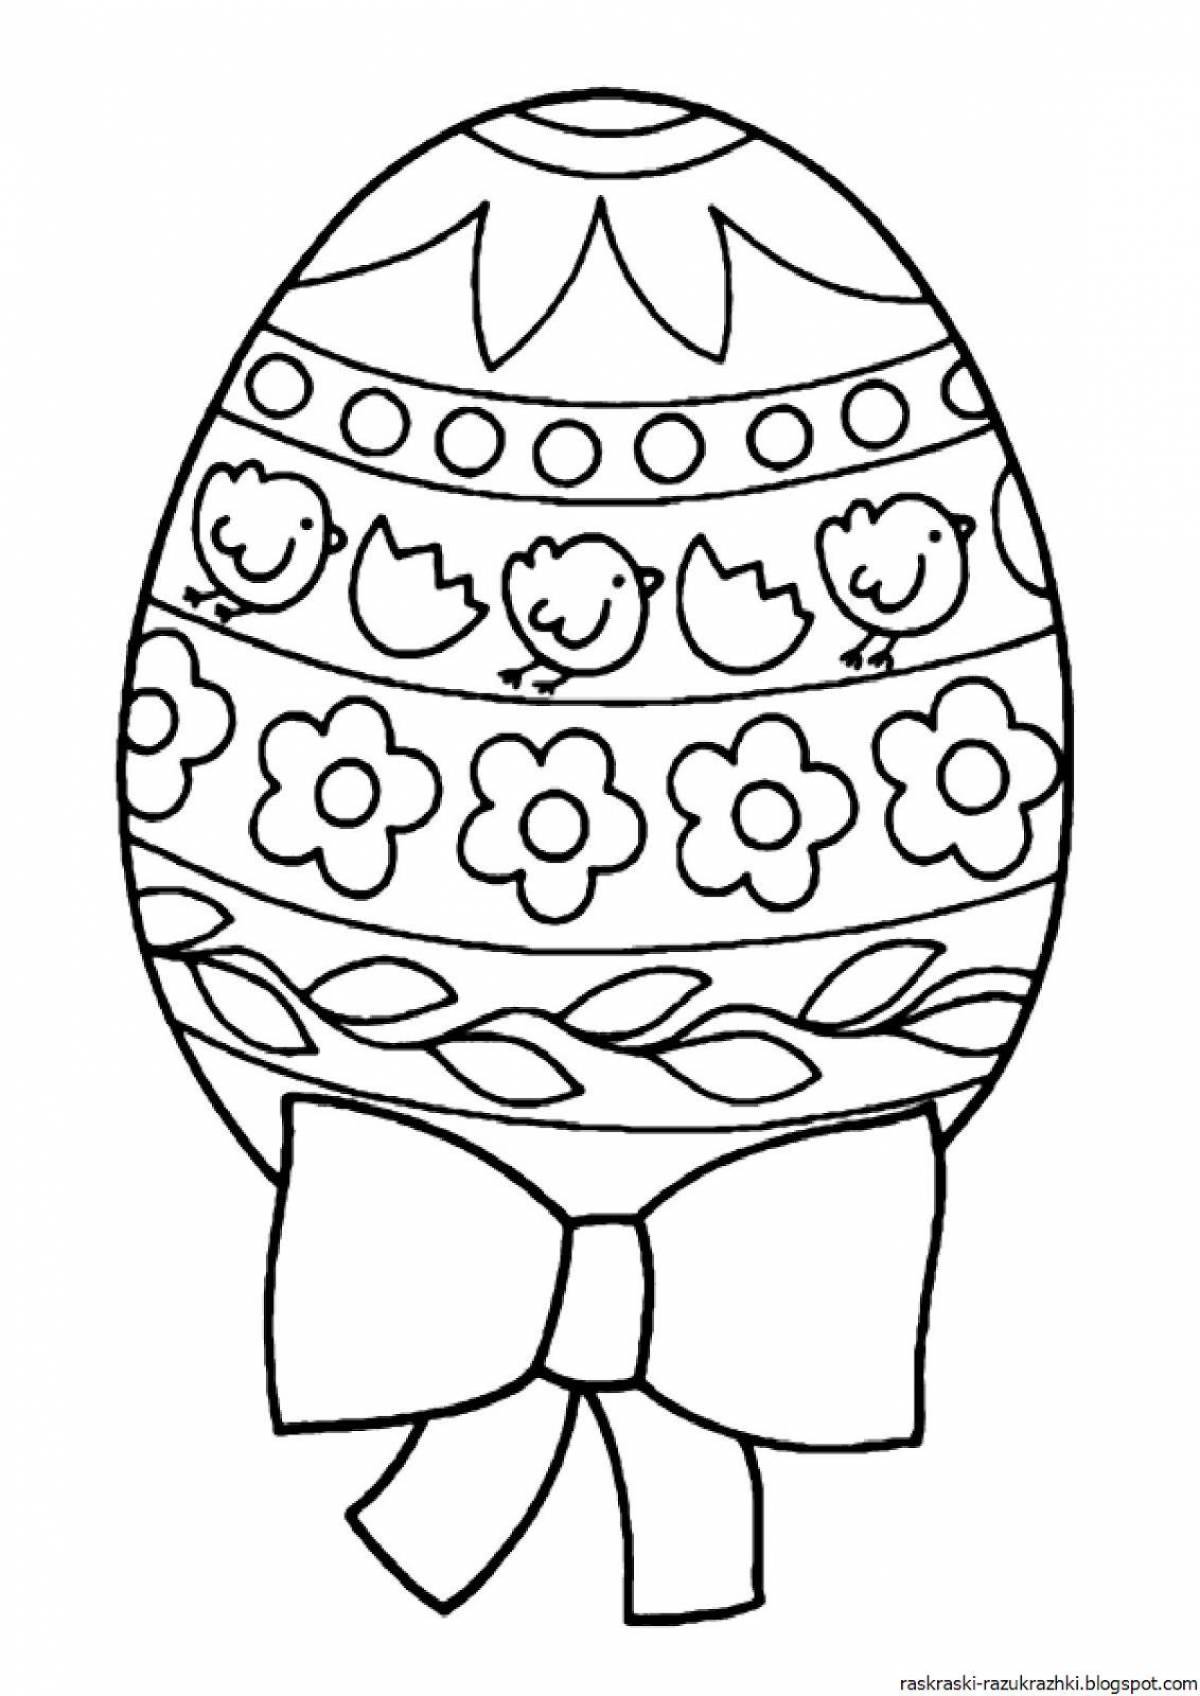 Раскраска радостное пасхальное яйцо